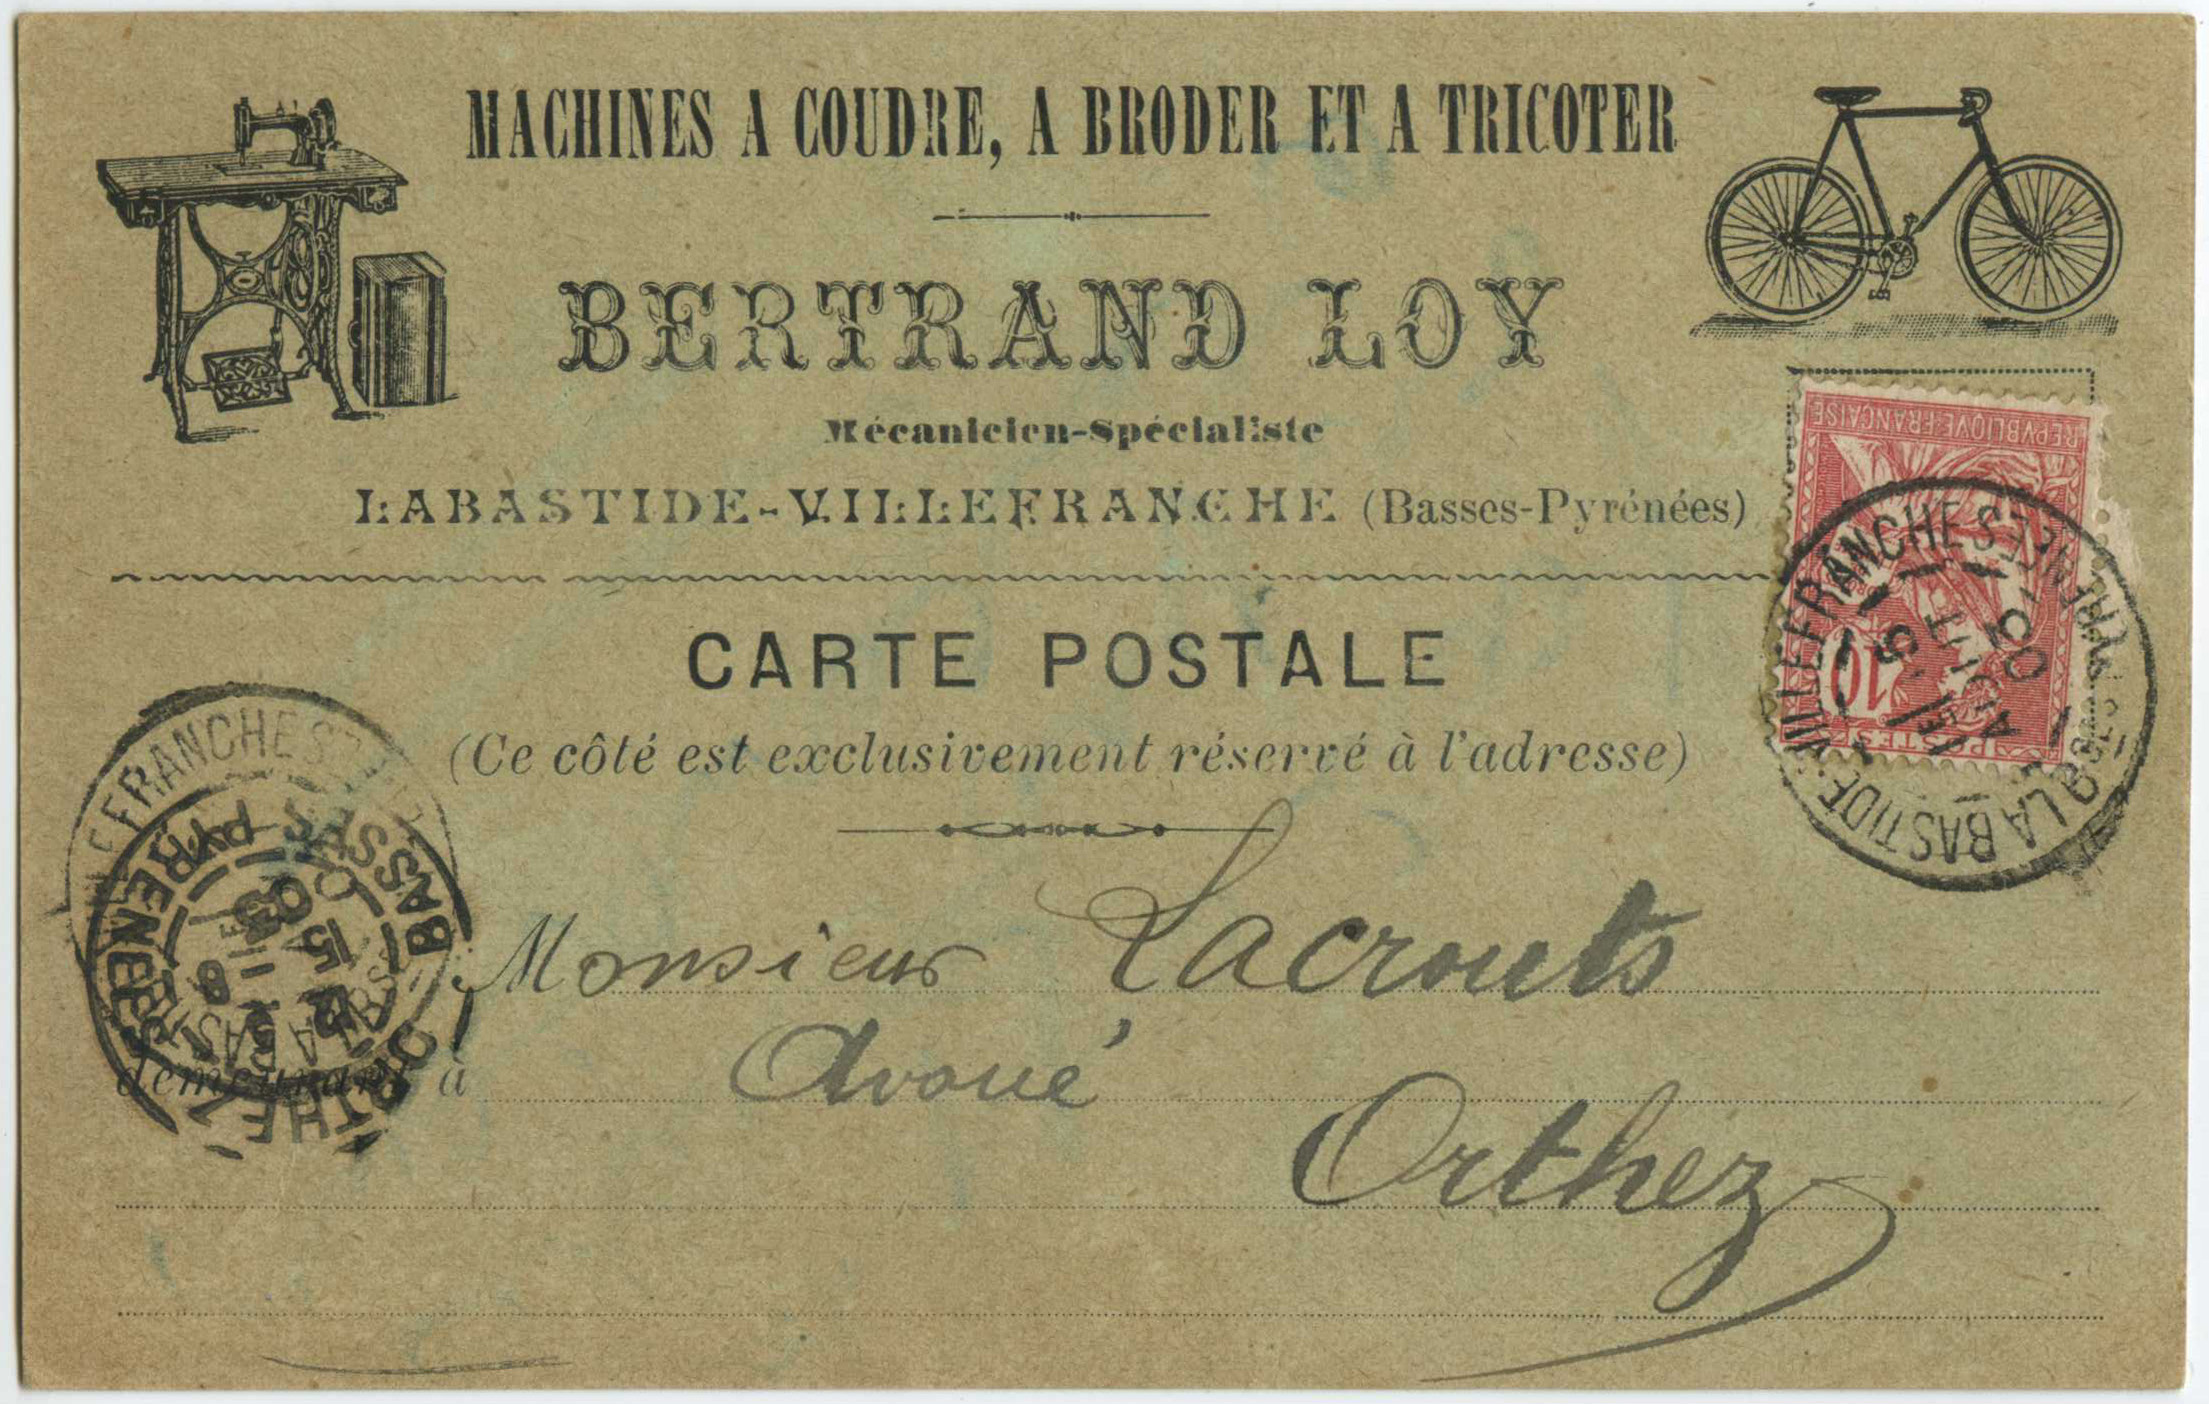 Labastide-Villefranche - Carte postale publicitaire - Bertrand Loy - Mécanicien-Spécialiste